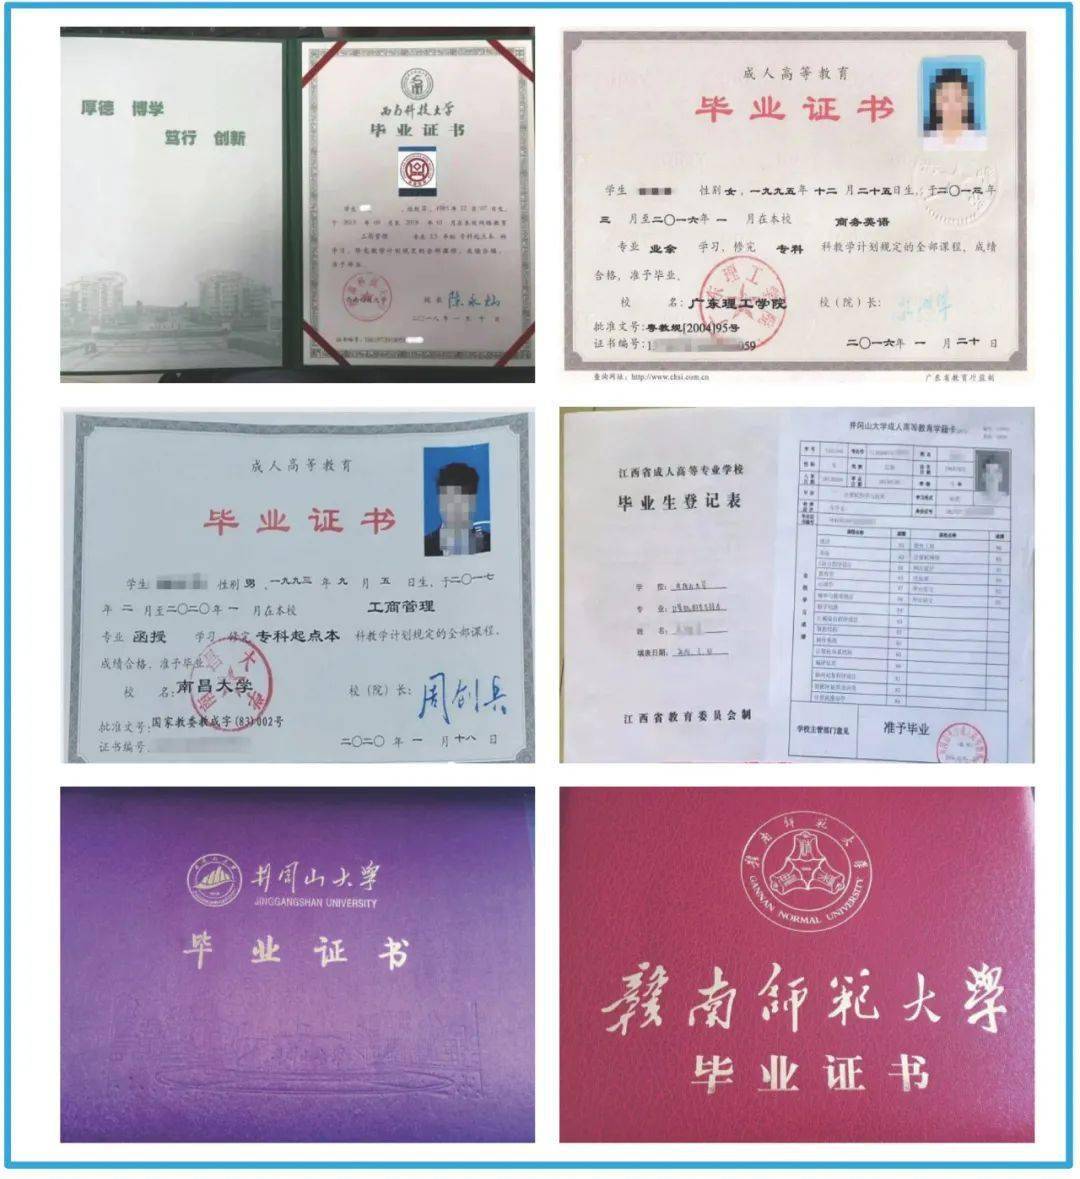 广东省“3+证书”高职高考本科院校的录取规则和计分方式明确说明